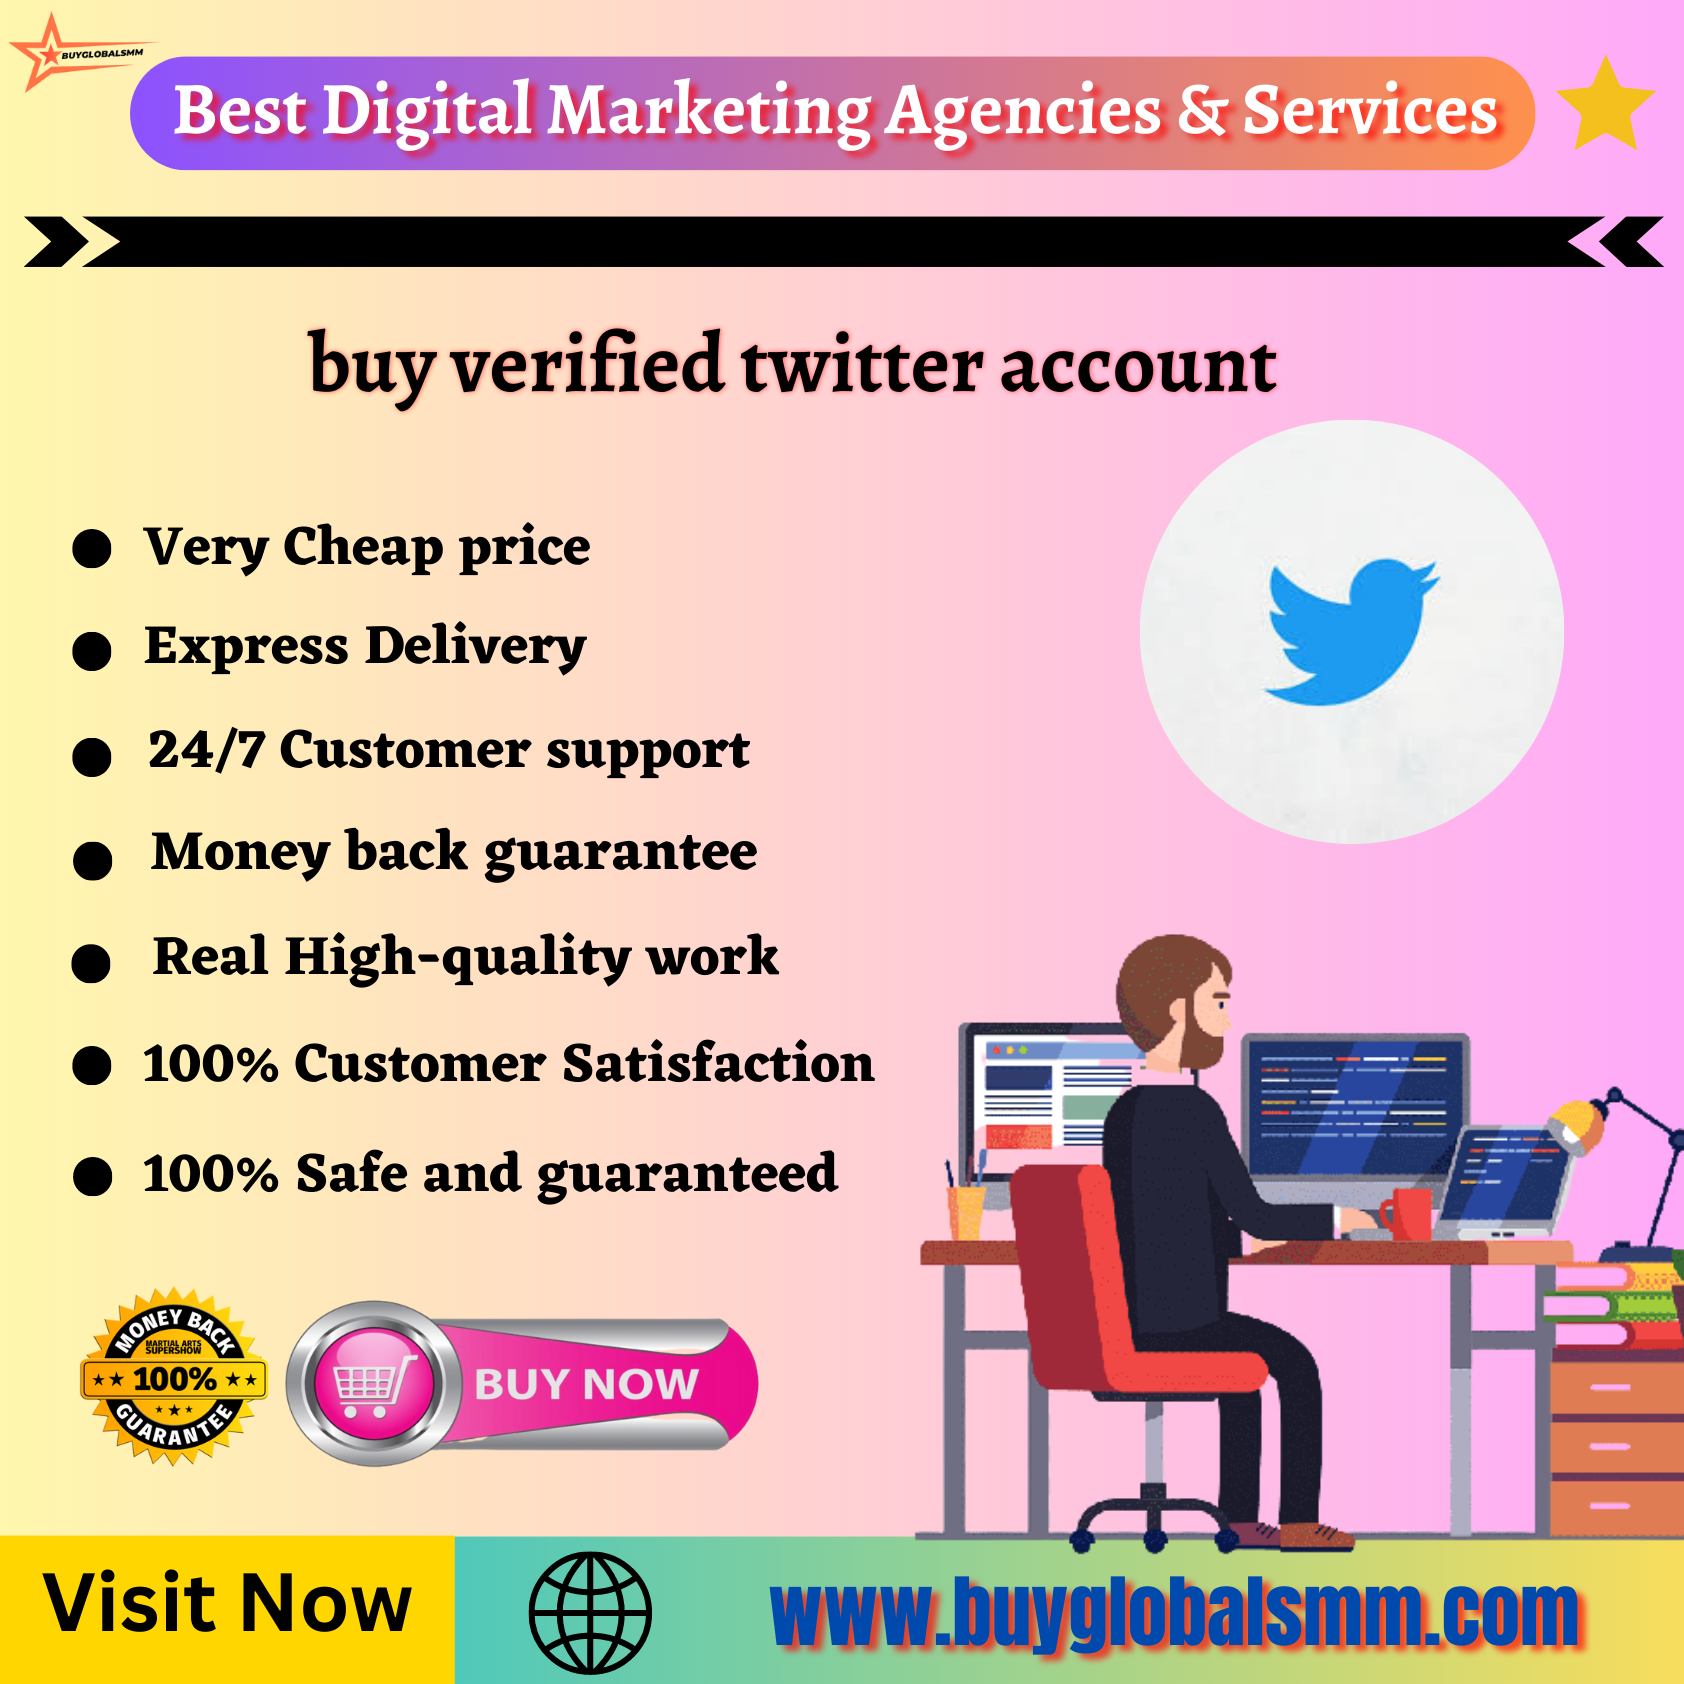 buy verified twitter account-100% full verified account...